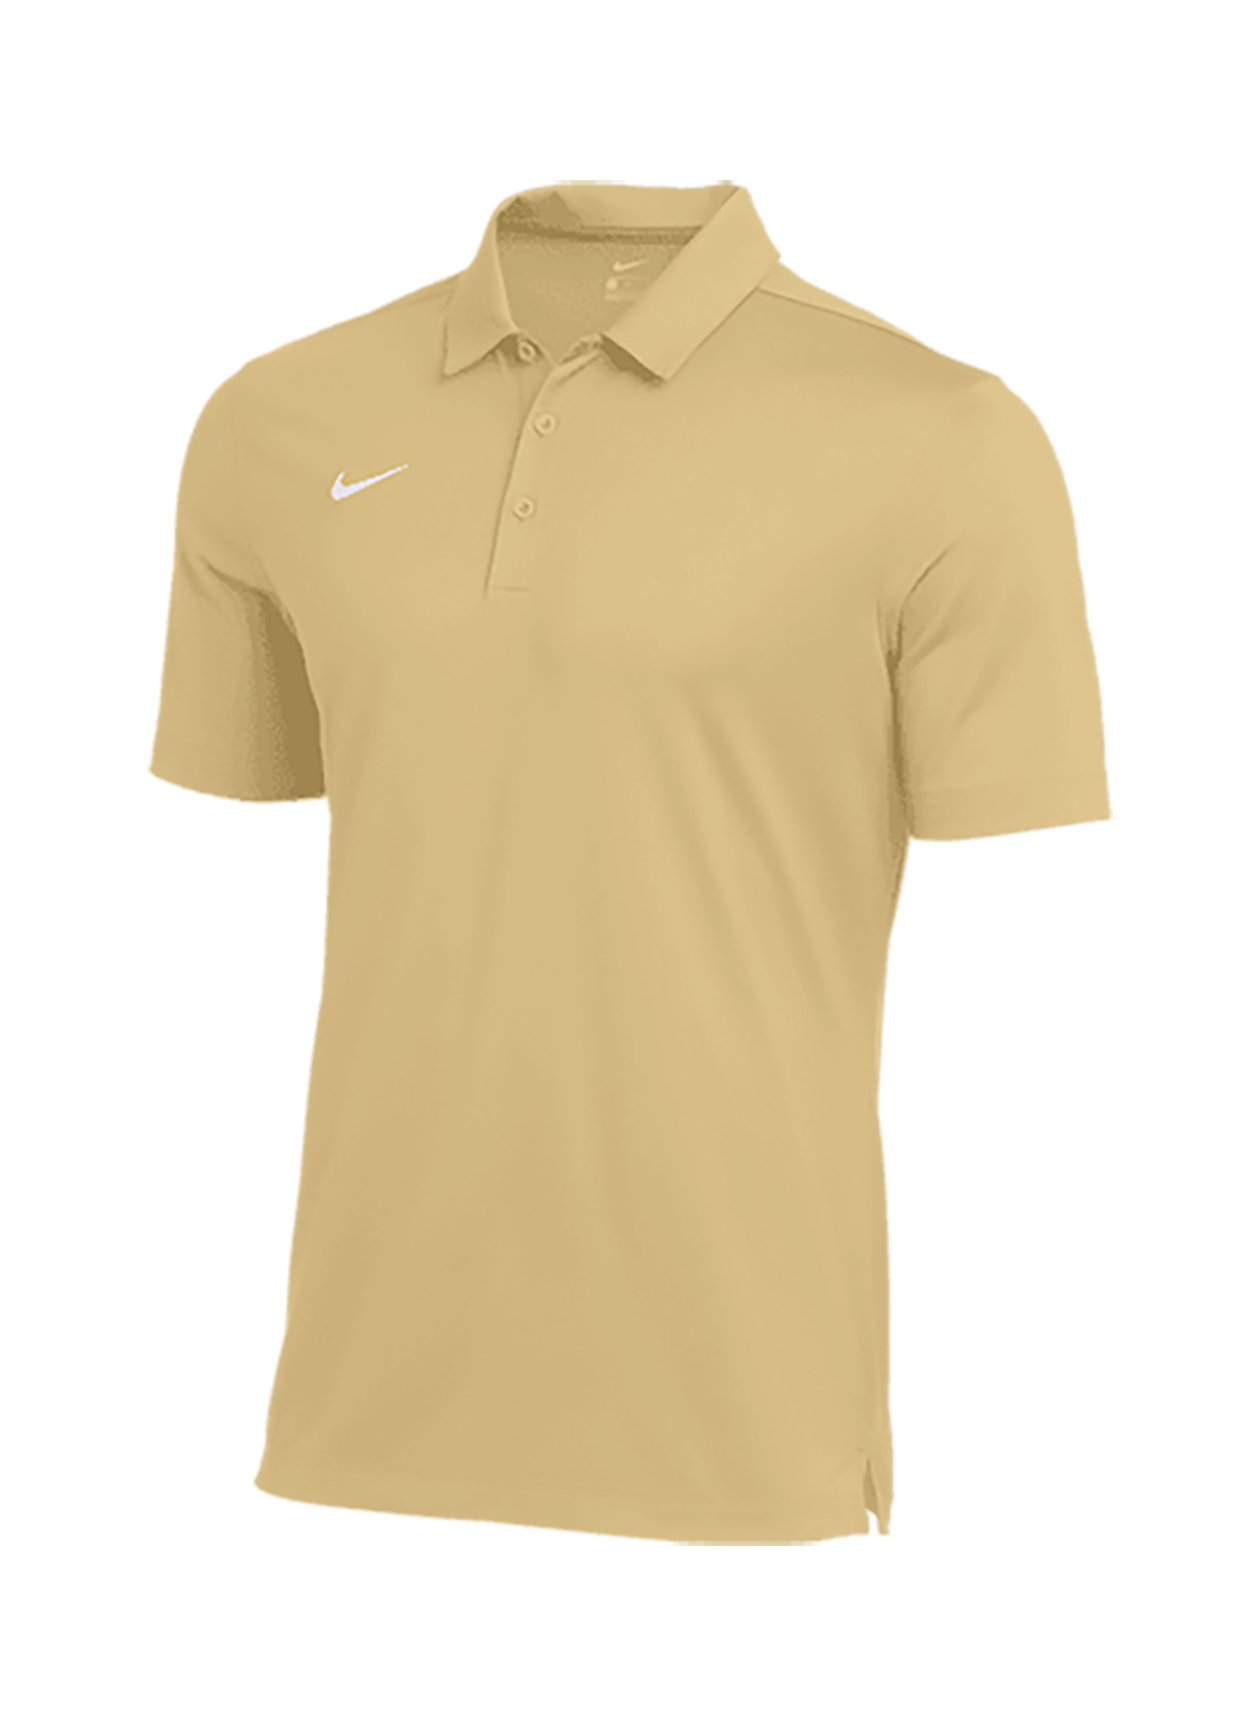 Nike Men's Team Gold Dri-FIT Franchise Polo